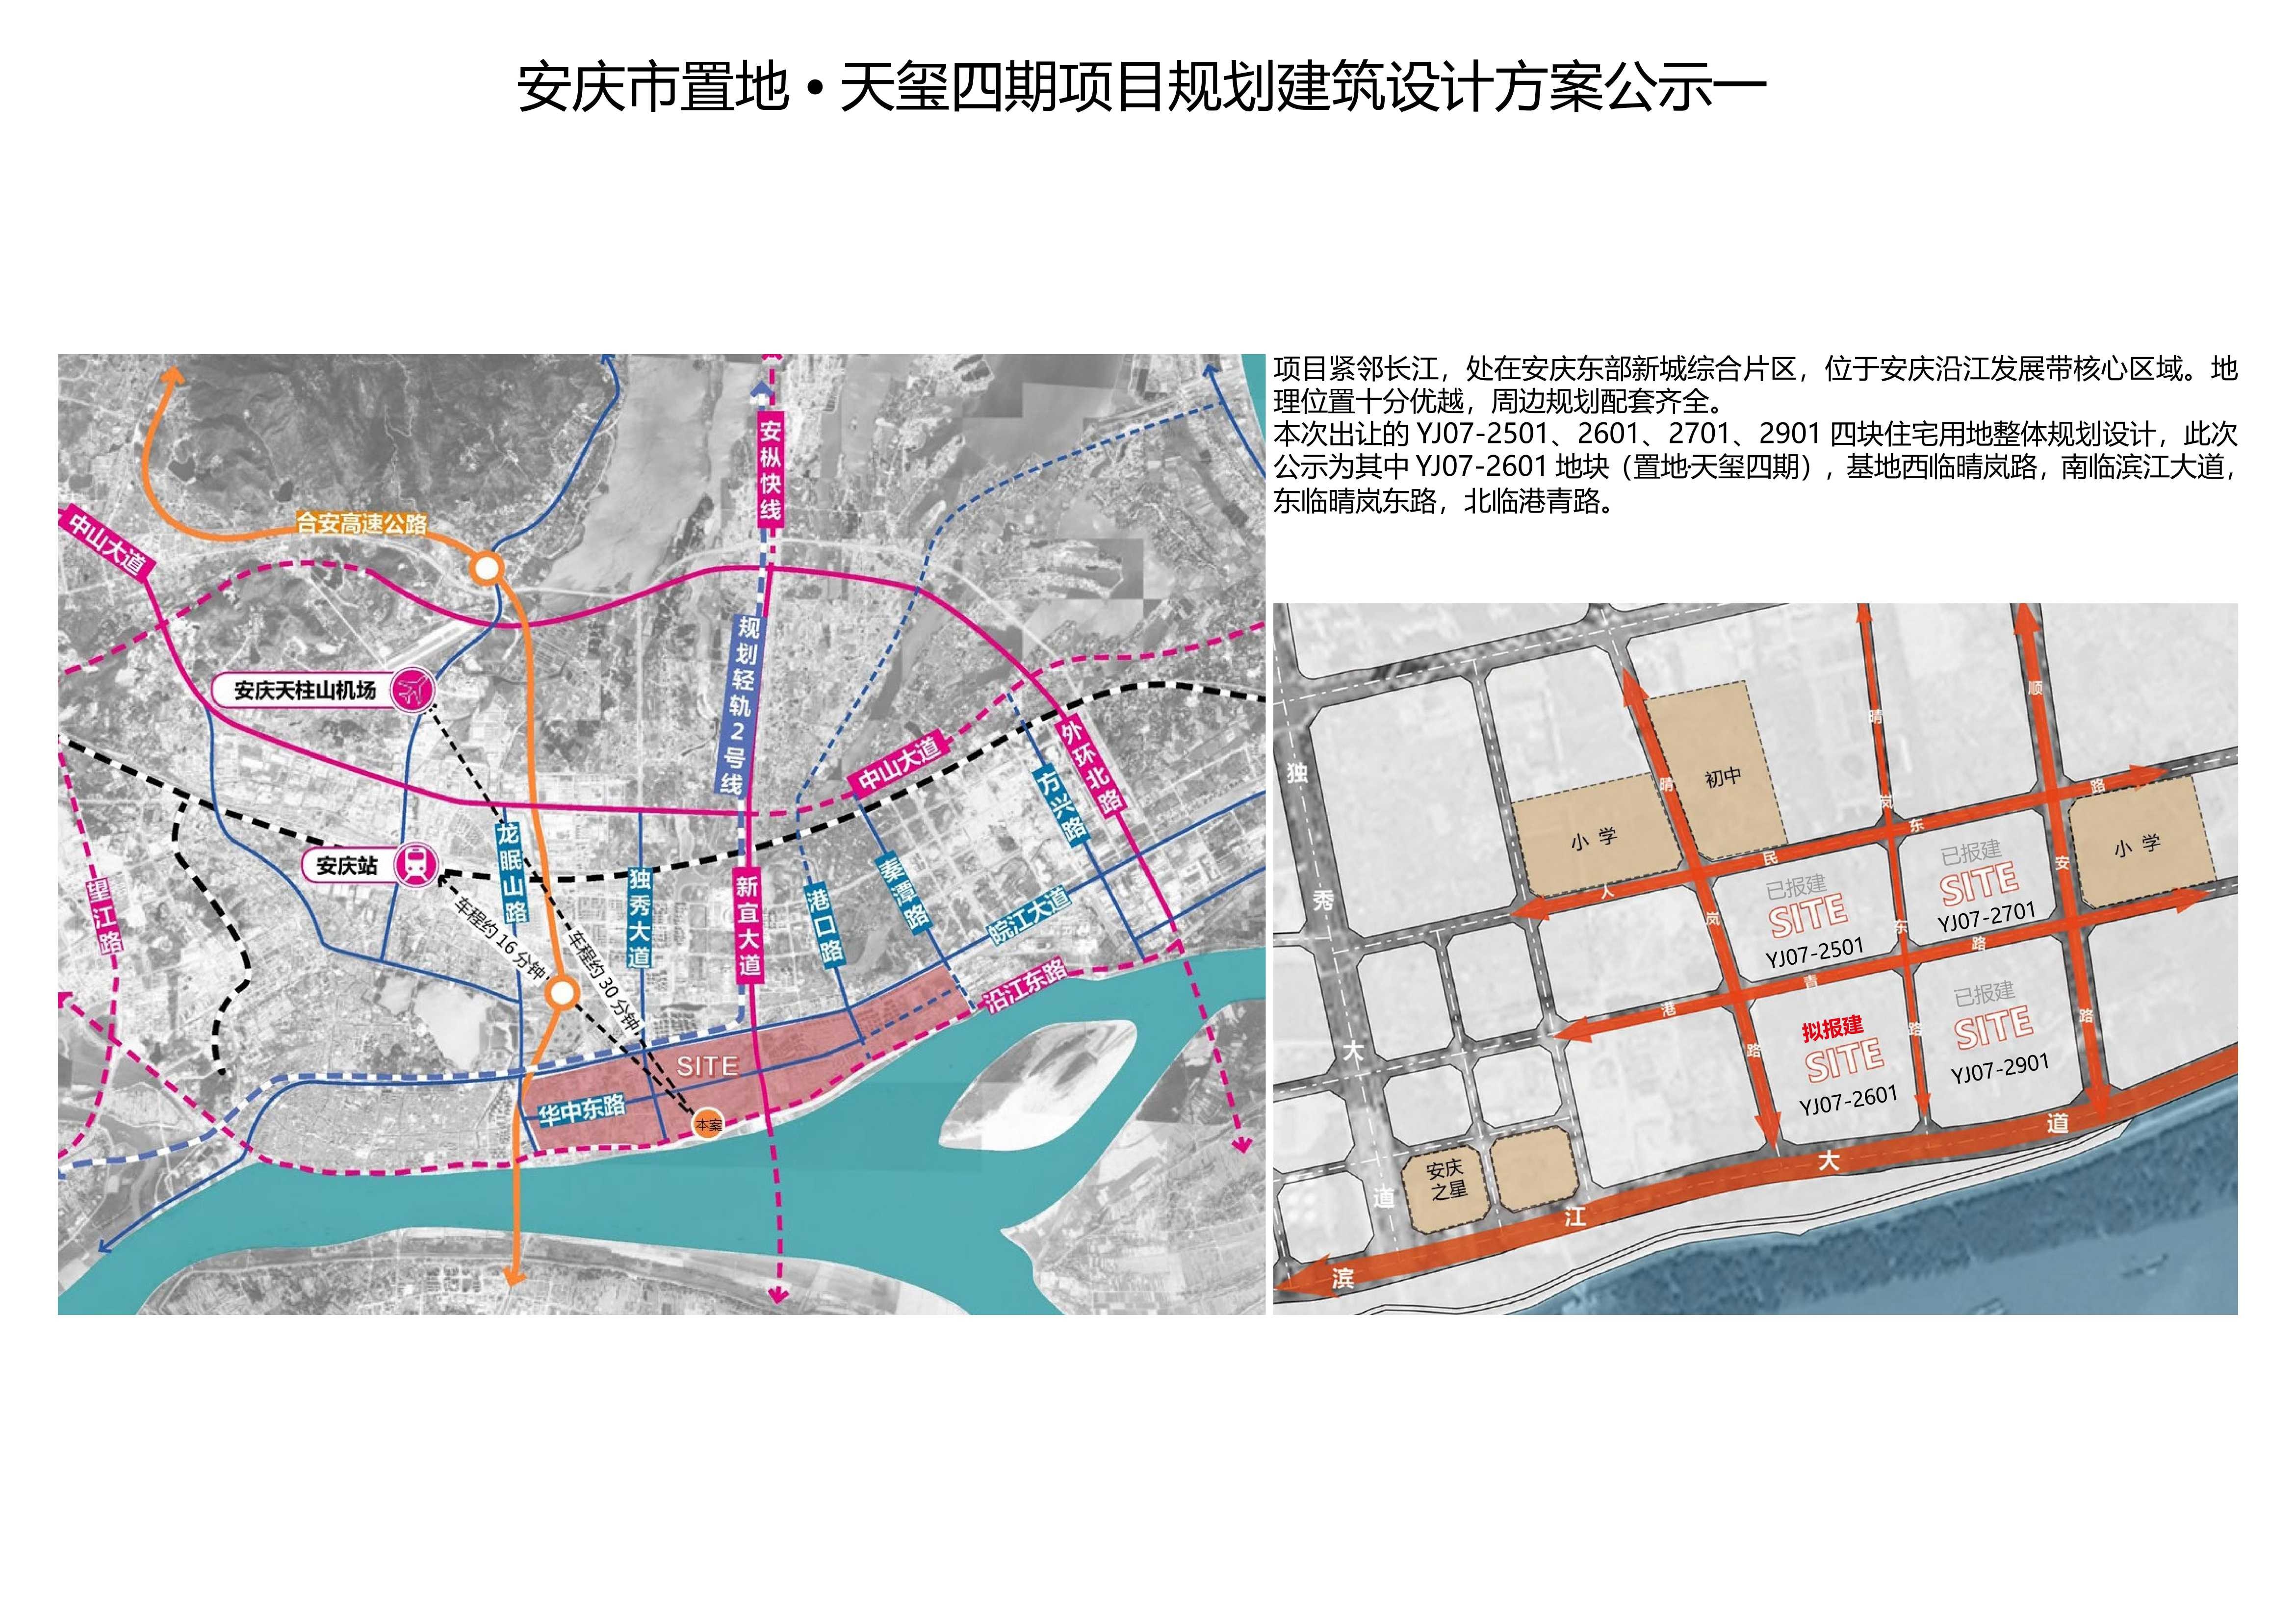 安庆市置地·天玺四期项目建设 工程设计方案公示公告